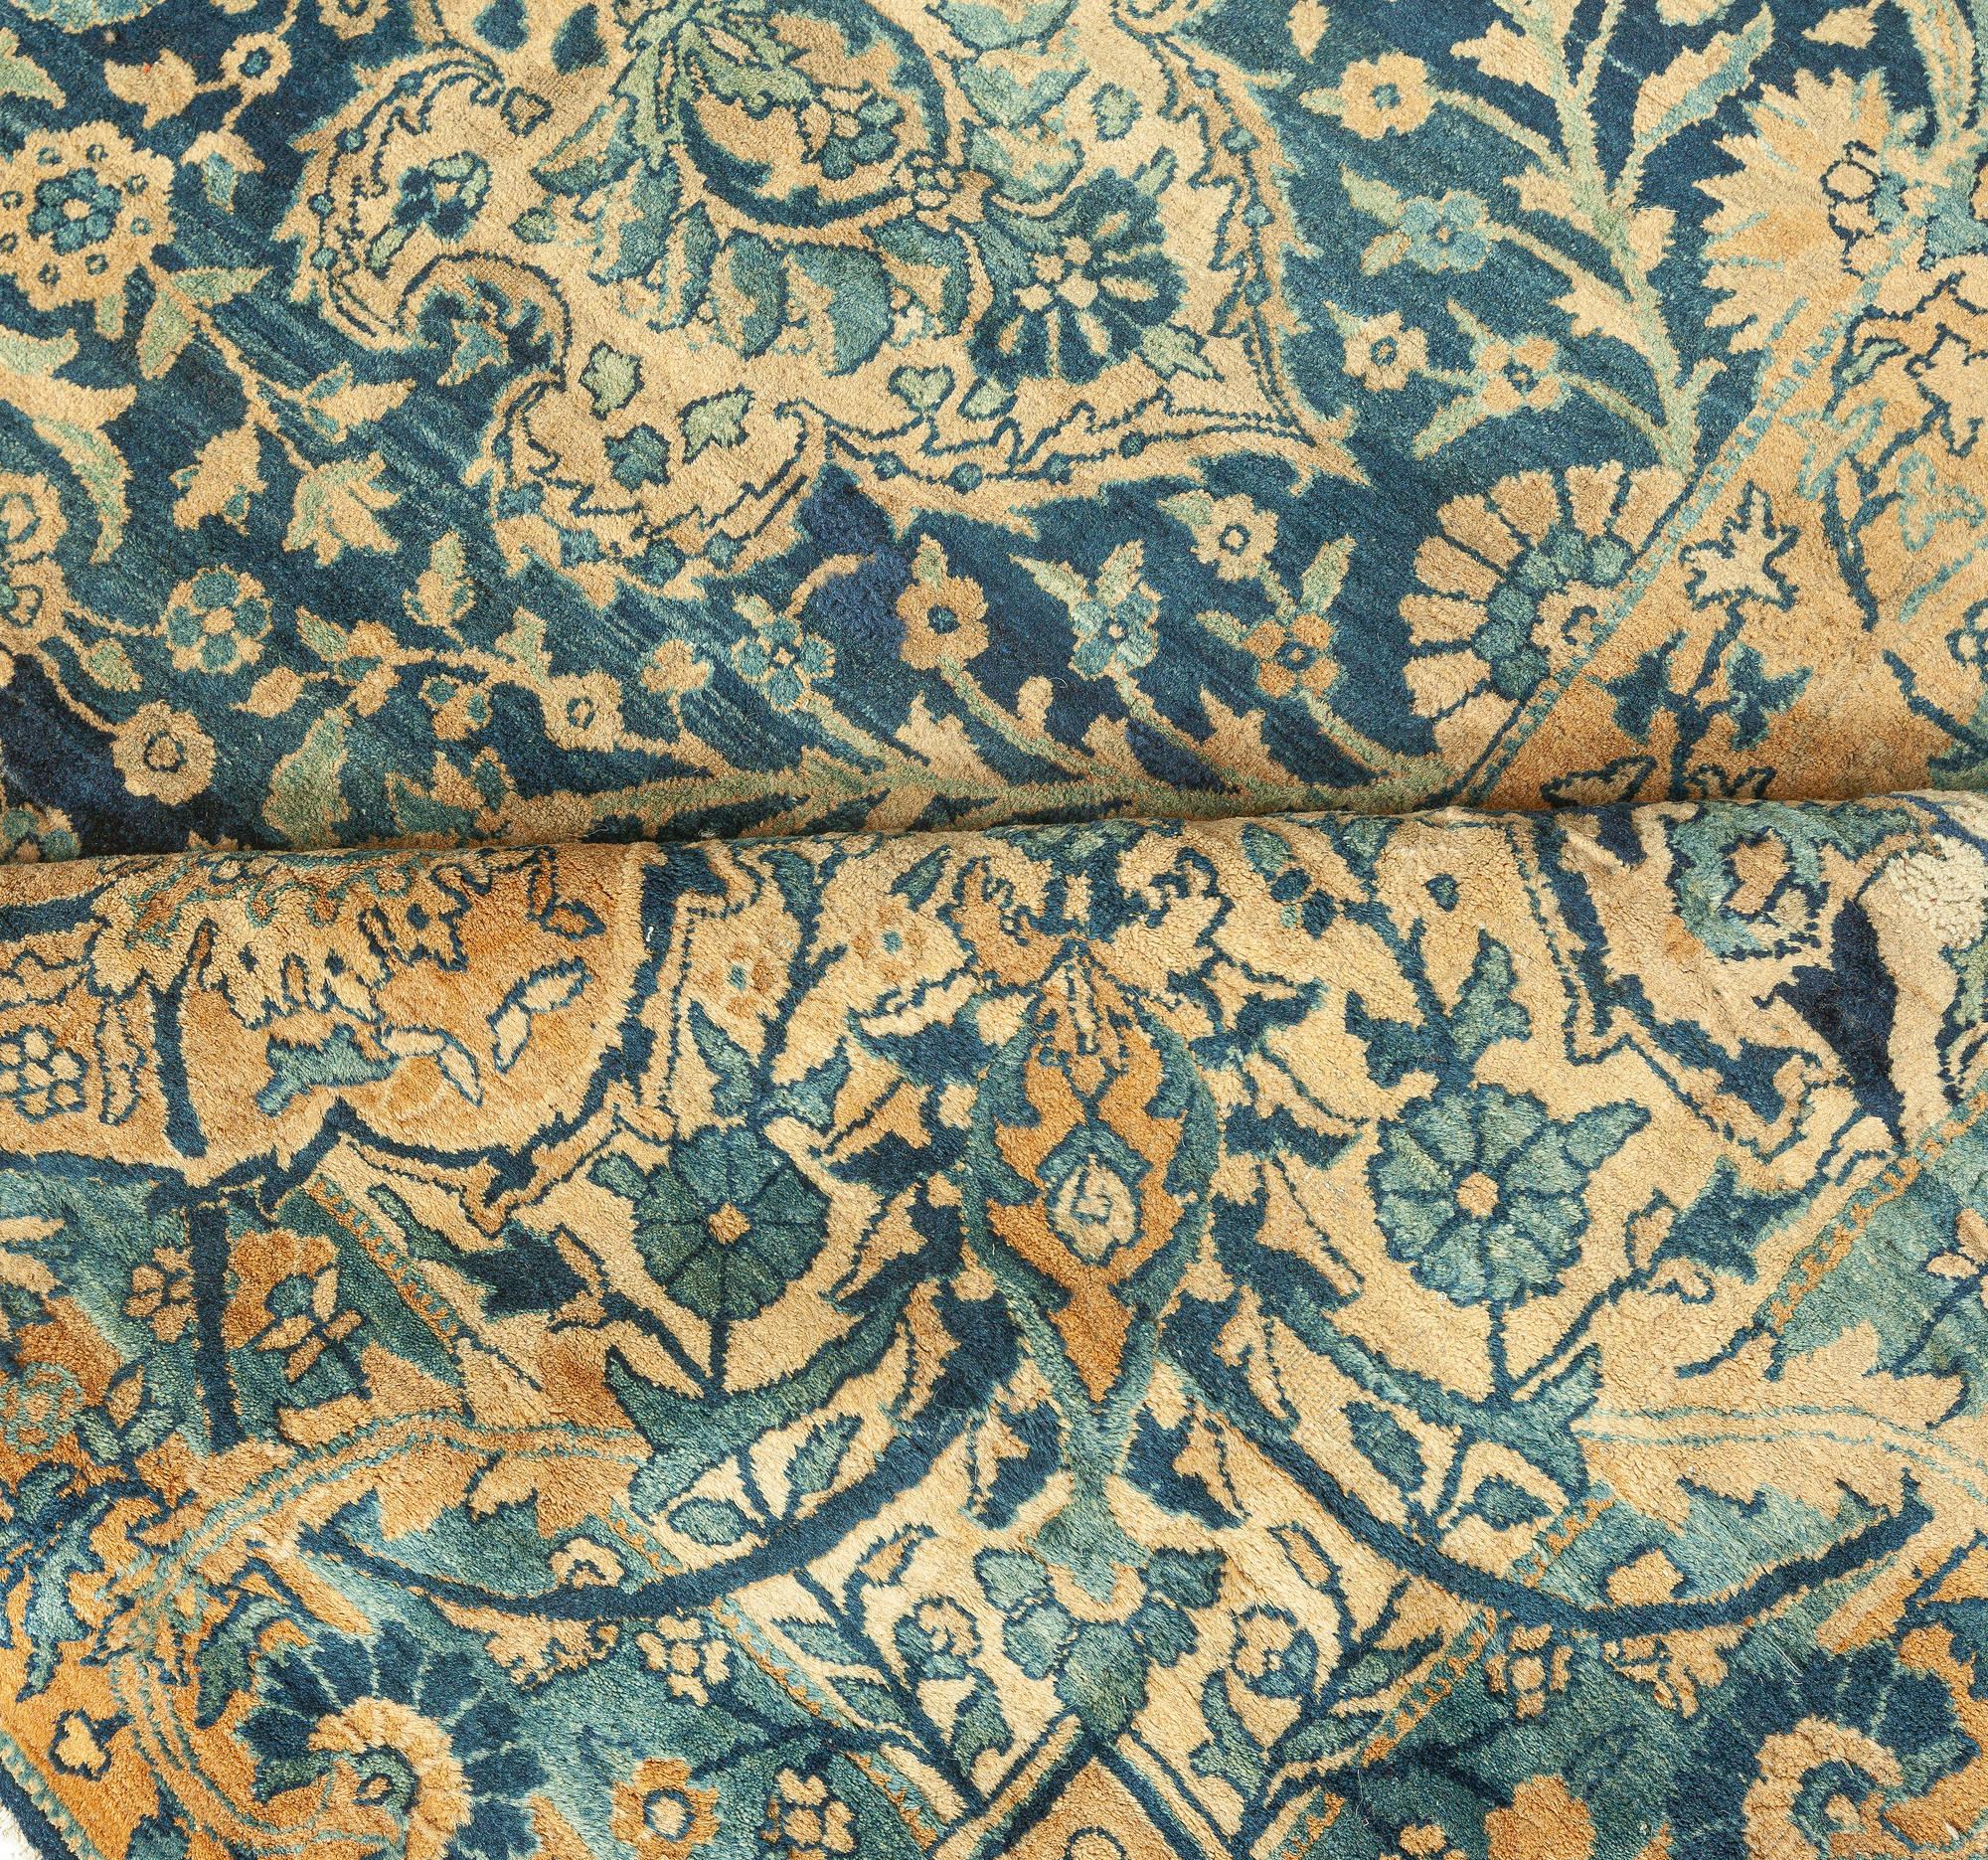 Antique Persian Kirman botanic navy blue background rug (size adjusted)
Size: 12'8